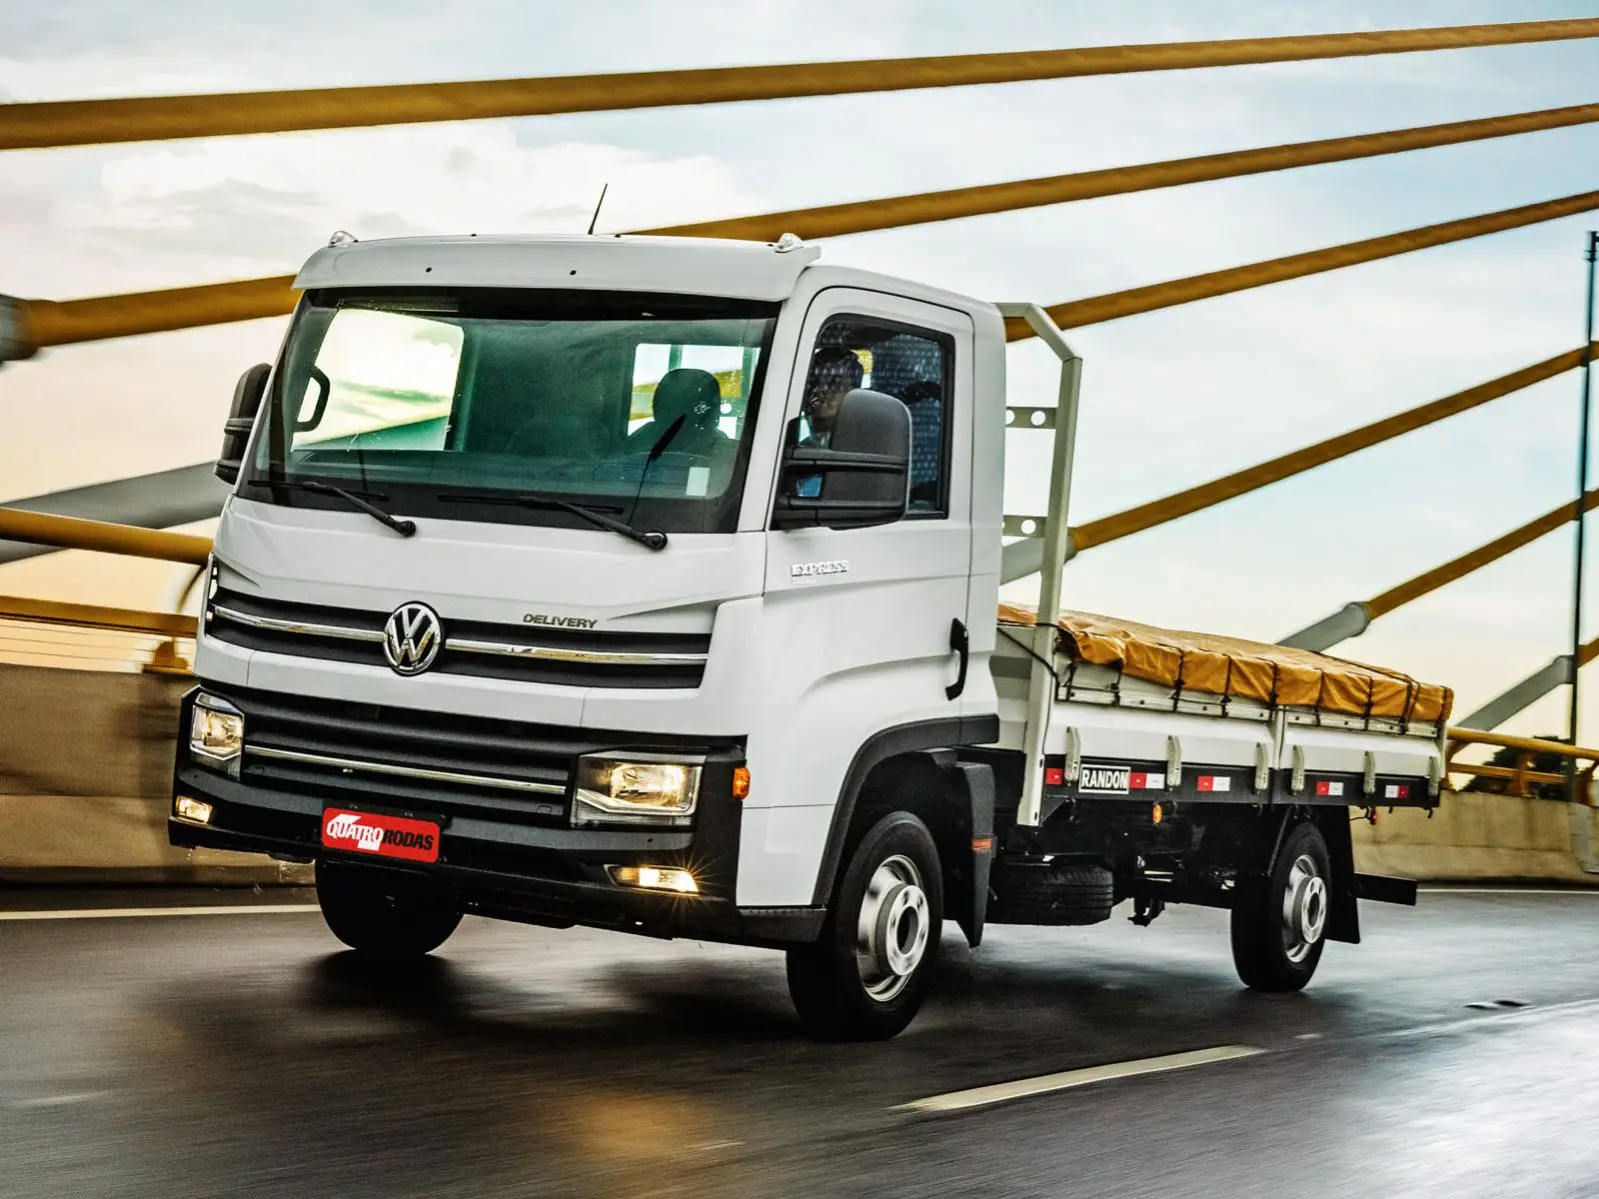 Contran determina quais modelos de caminhonetes estão dispensados dos equipamentos obrigatórios para caminhões